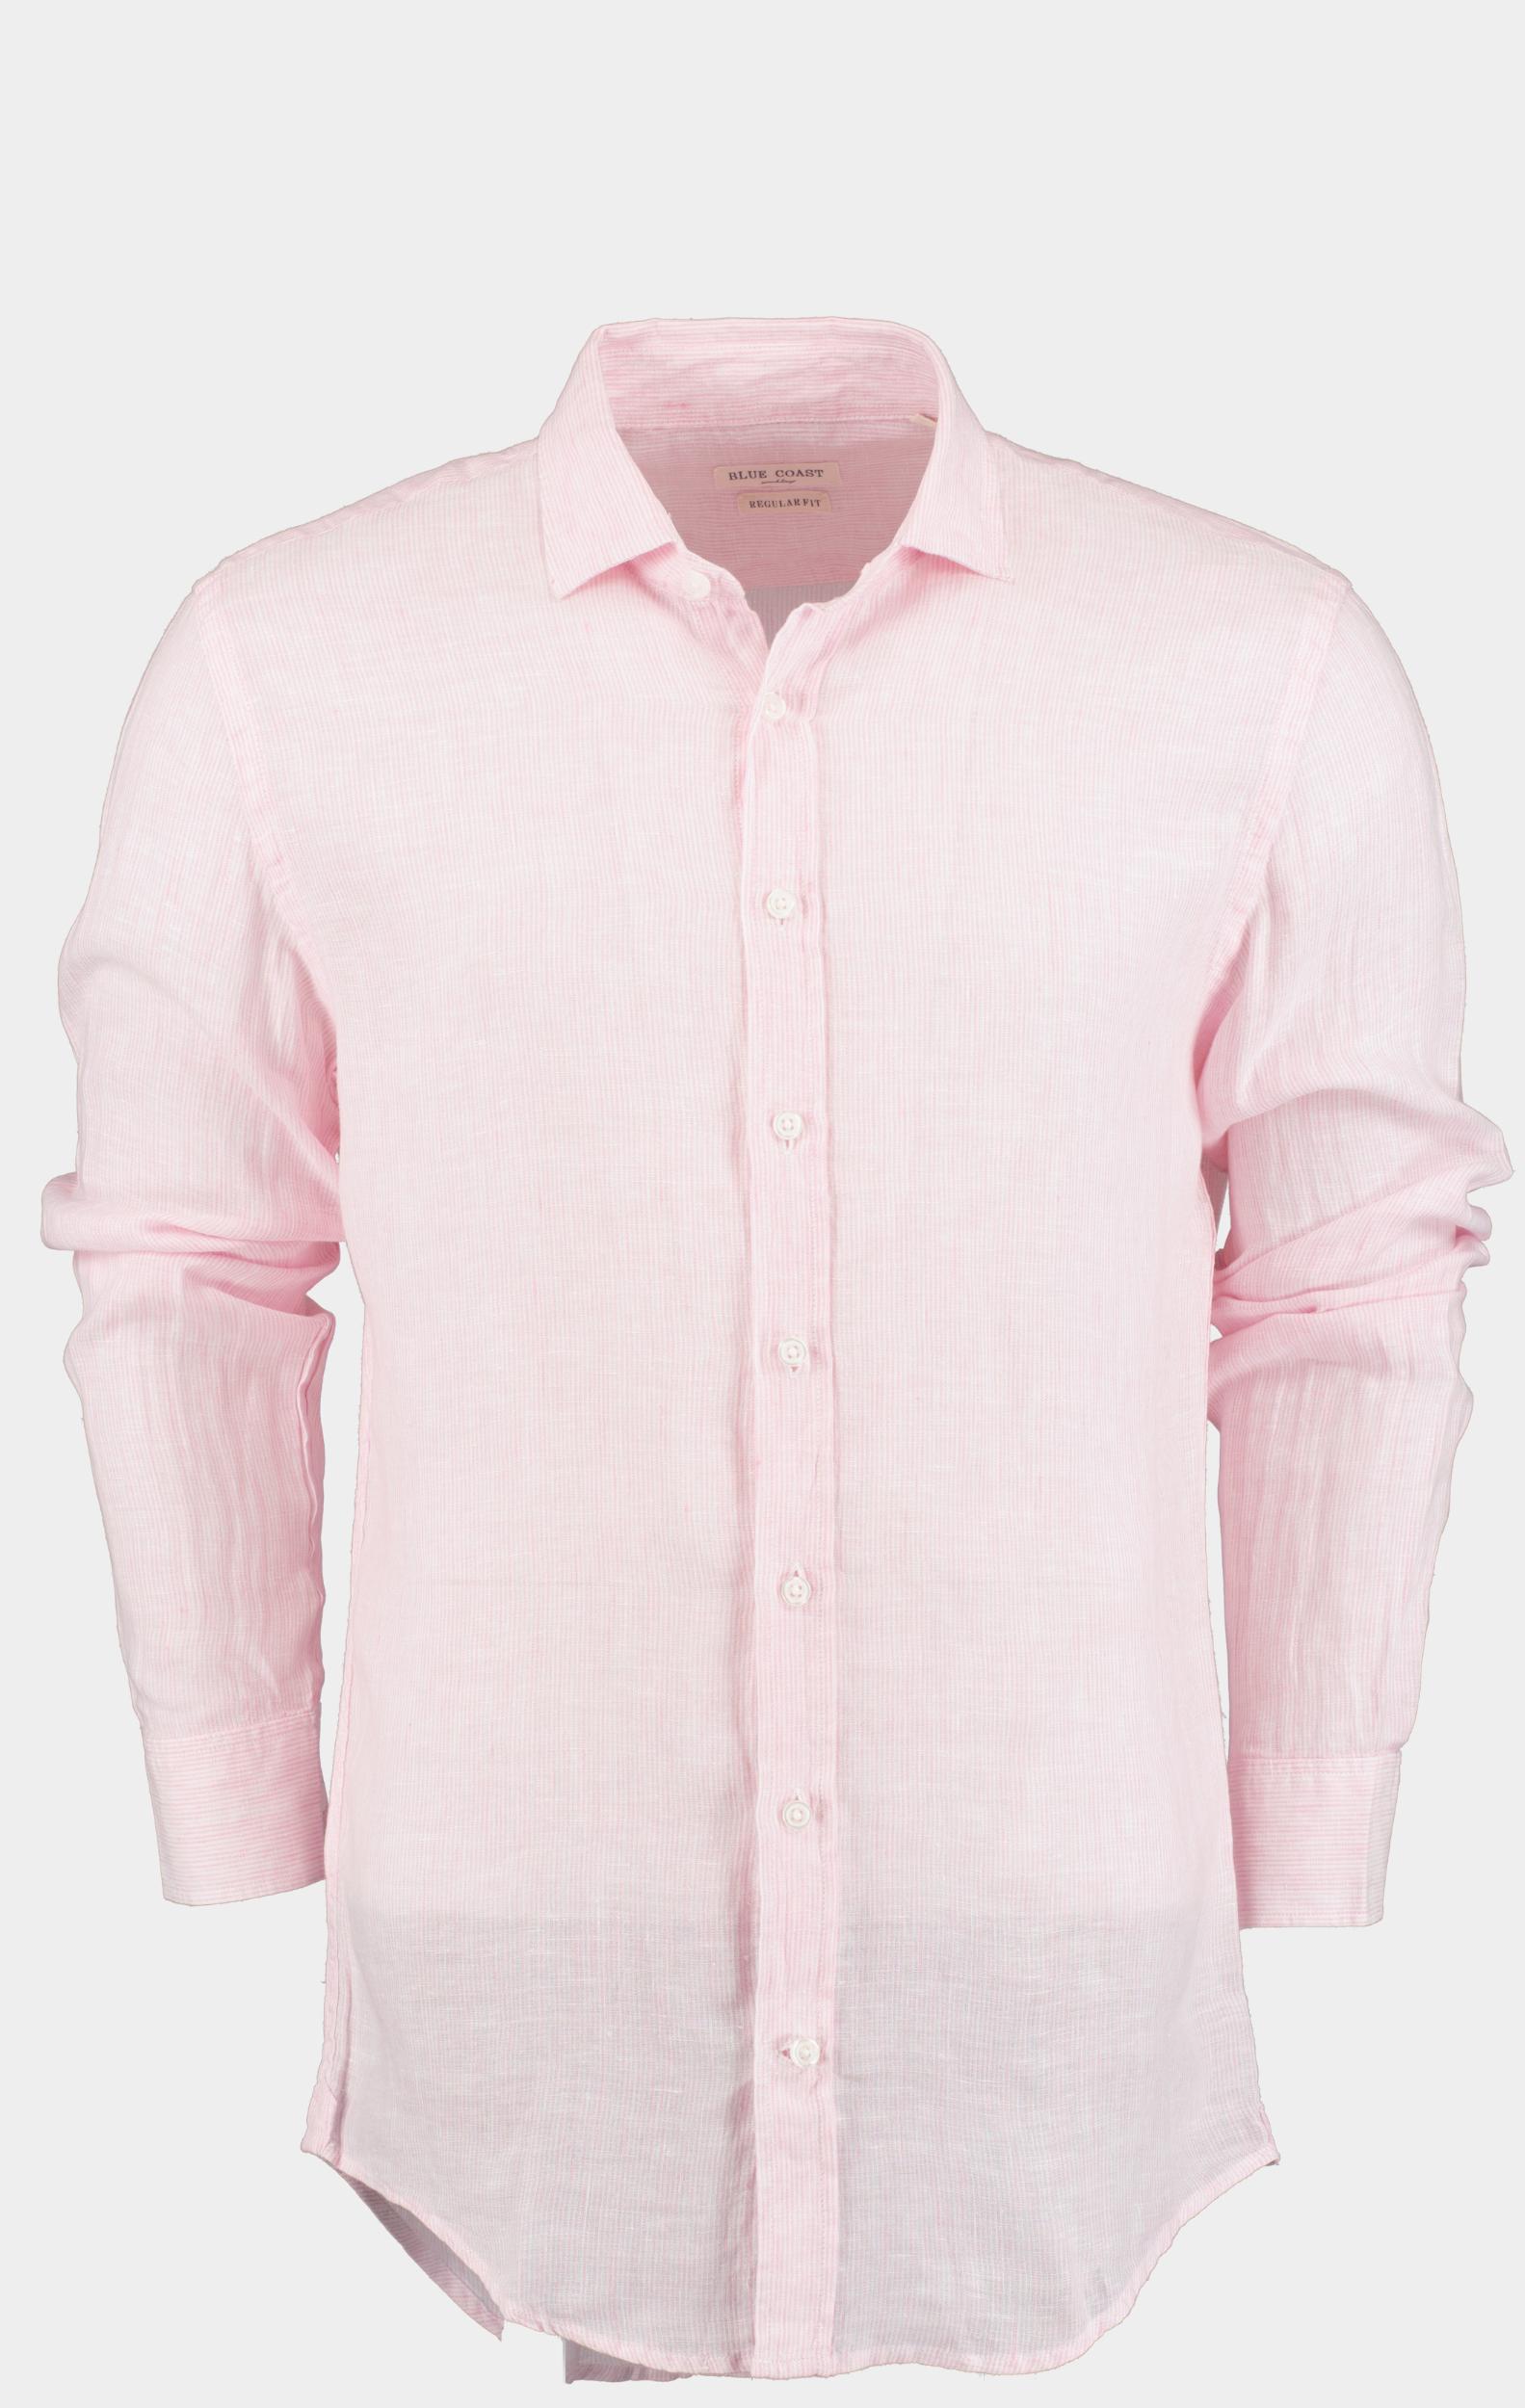 Blue Coast Casual hemd lange mouw Roze 100% Linnen MOD118R1/20 rosa